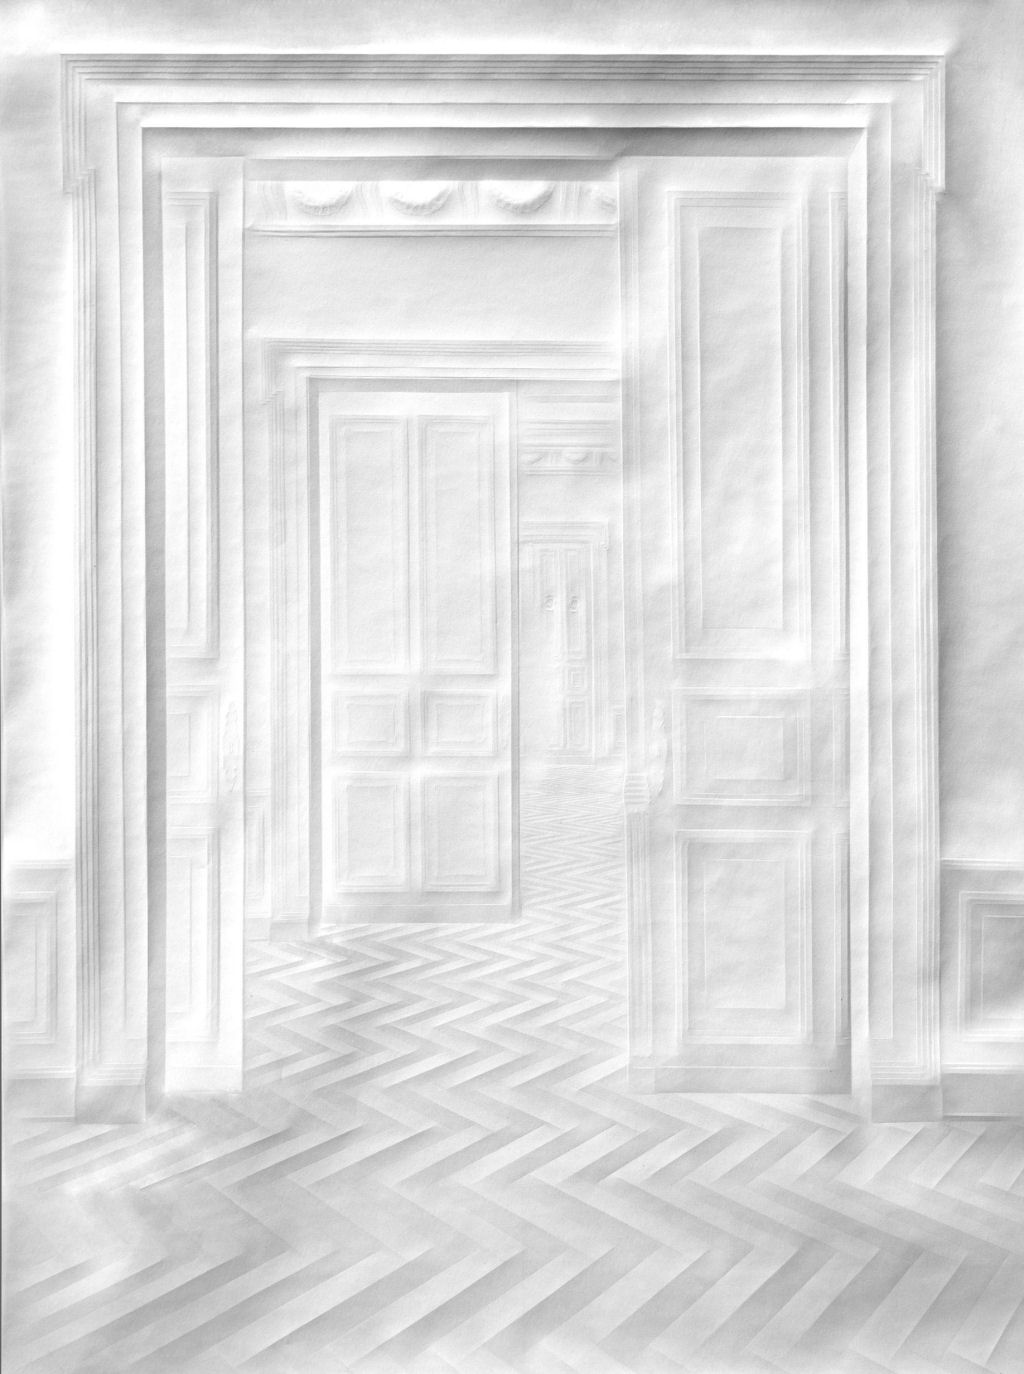 Dobras meticulosas formam espaos ornamentados e labirnticos com relevos no papel 03